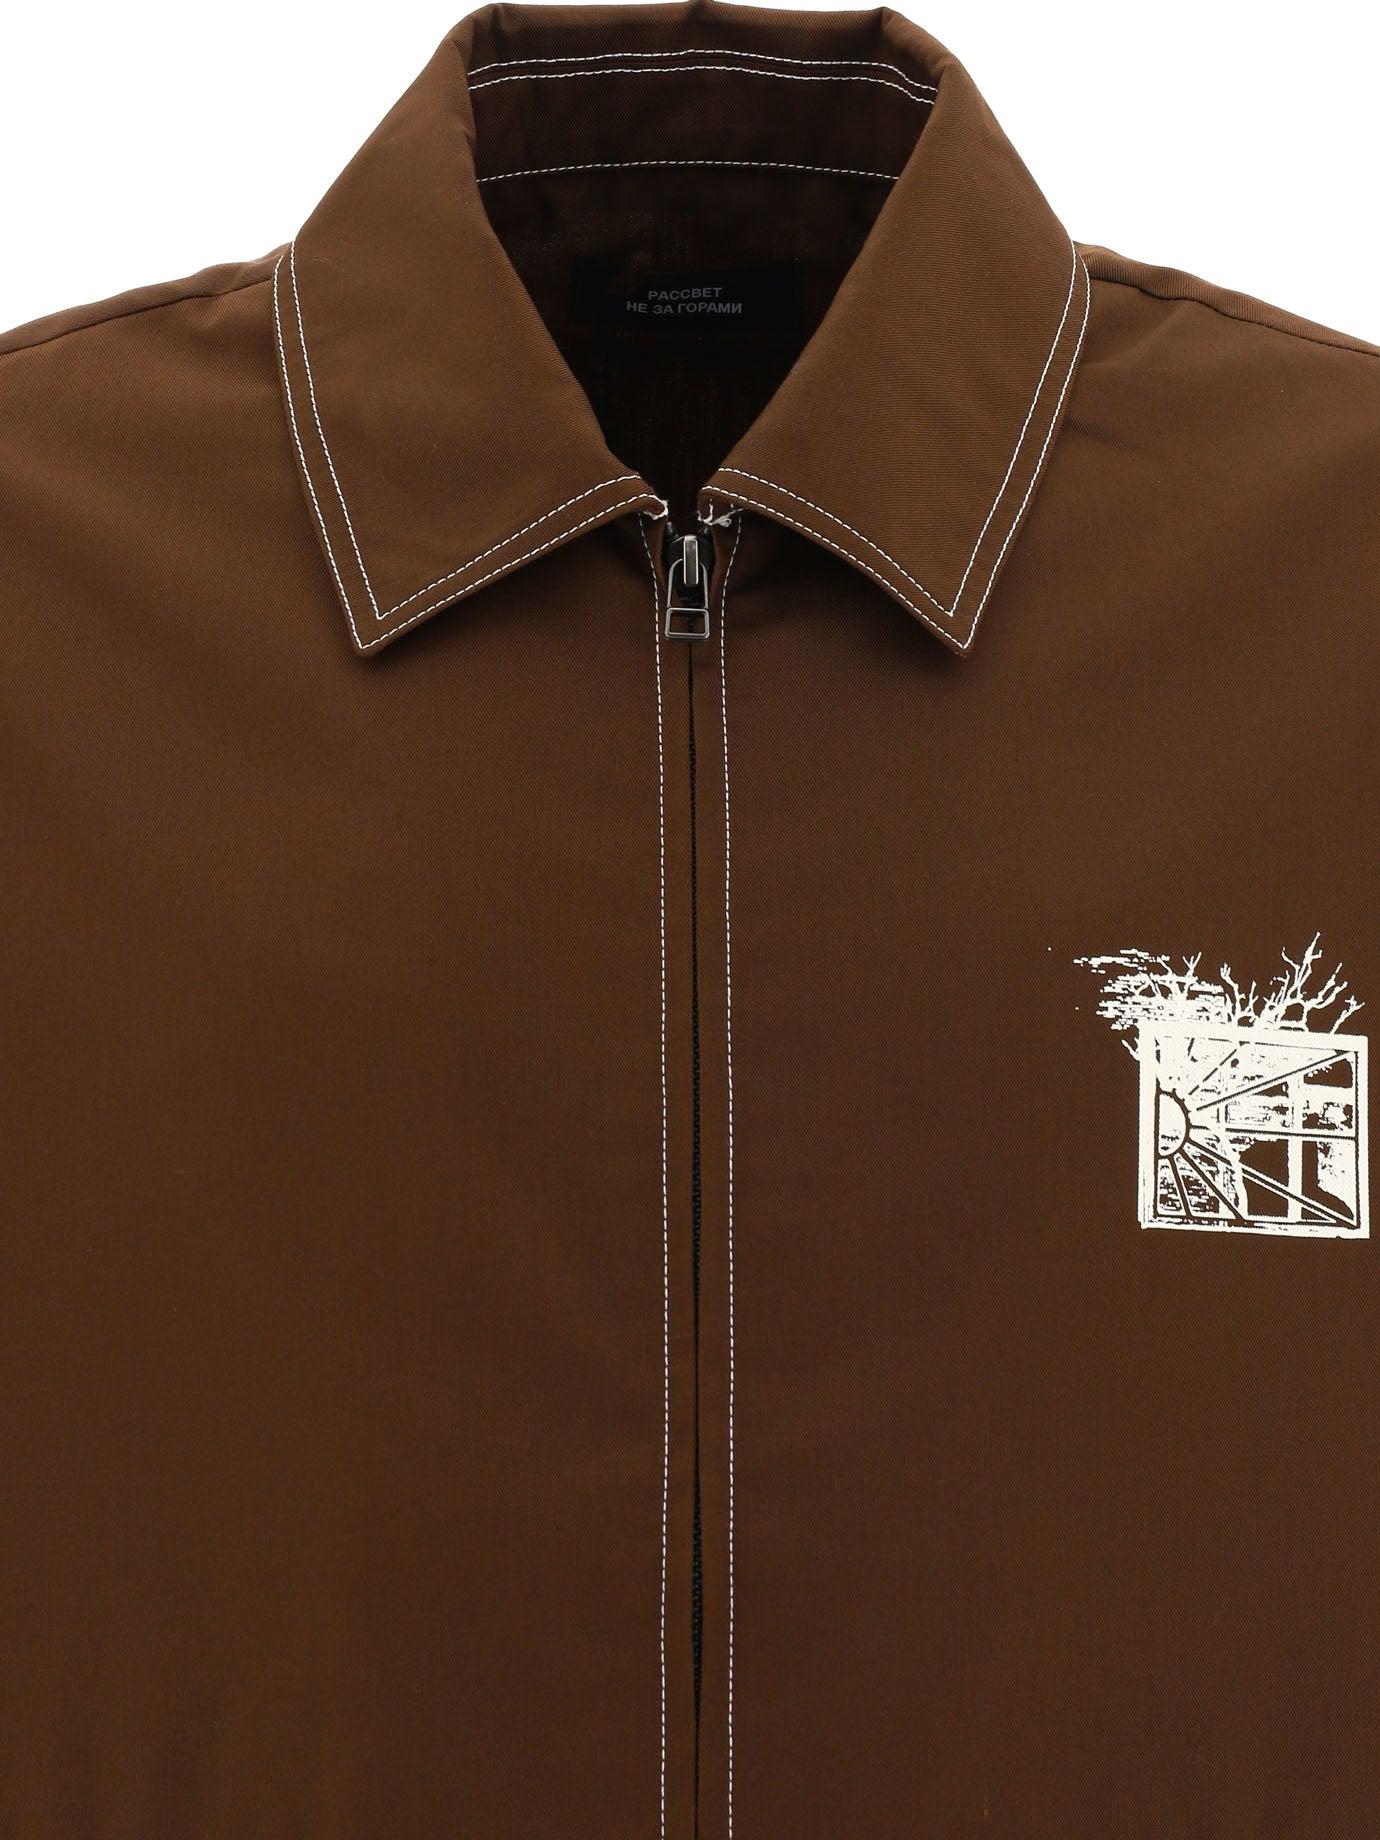 Rassvet (PACCBET) Overshirt With Zip in Brown for Men | Lyst